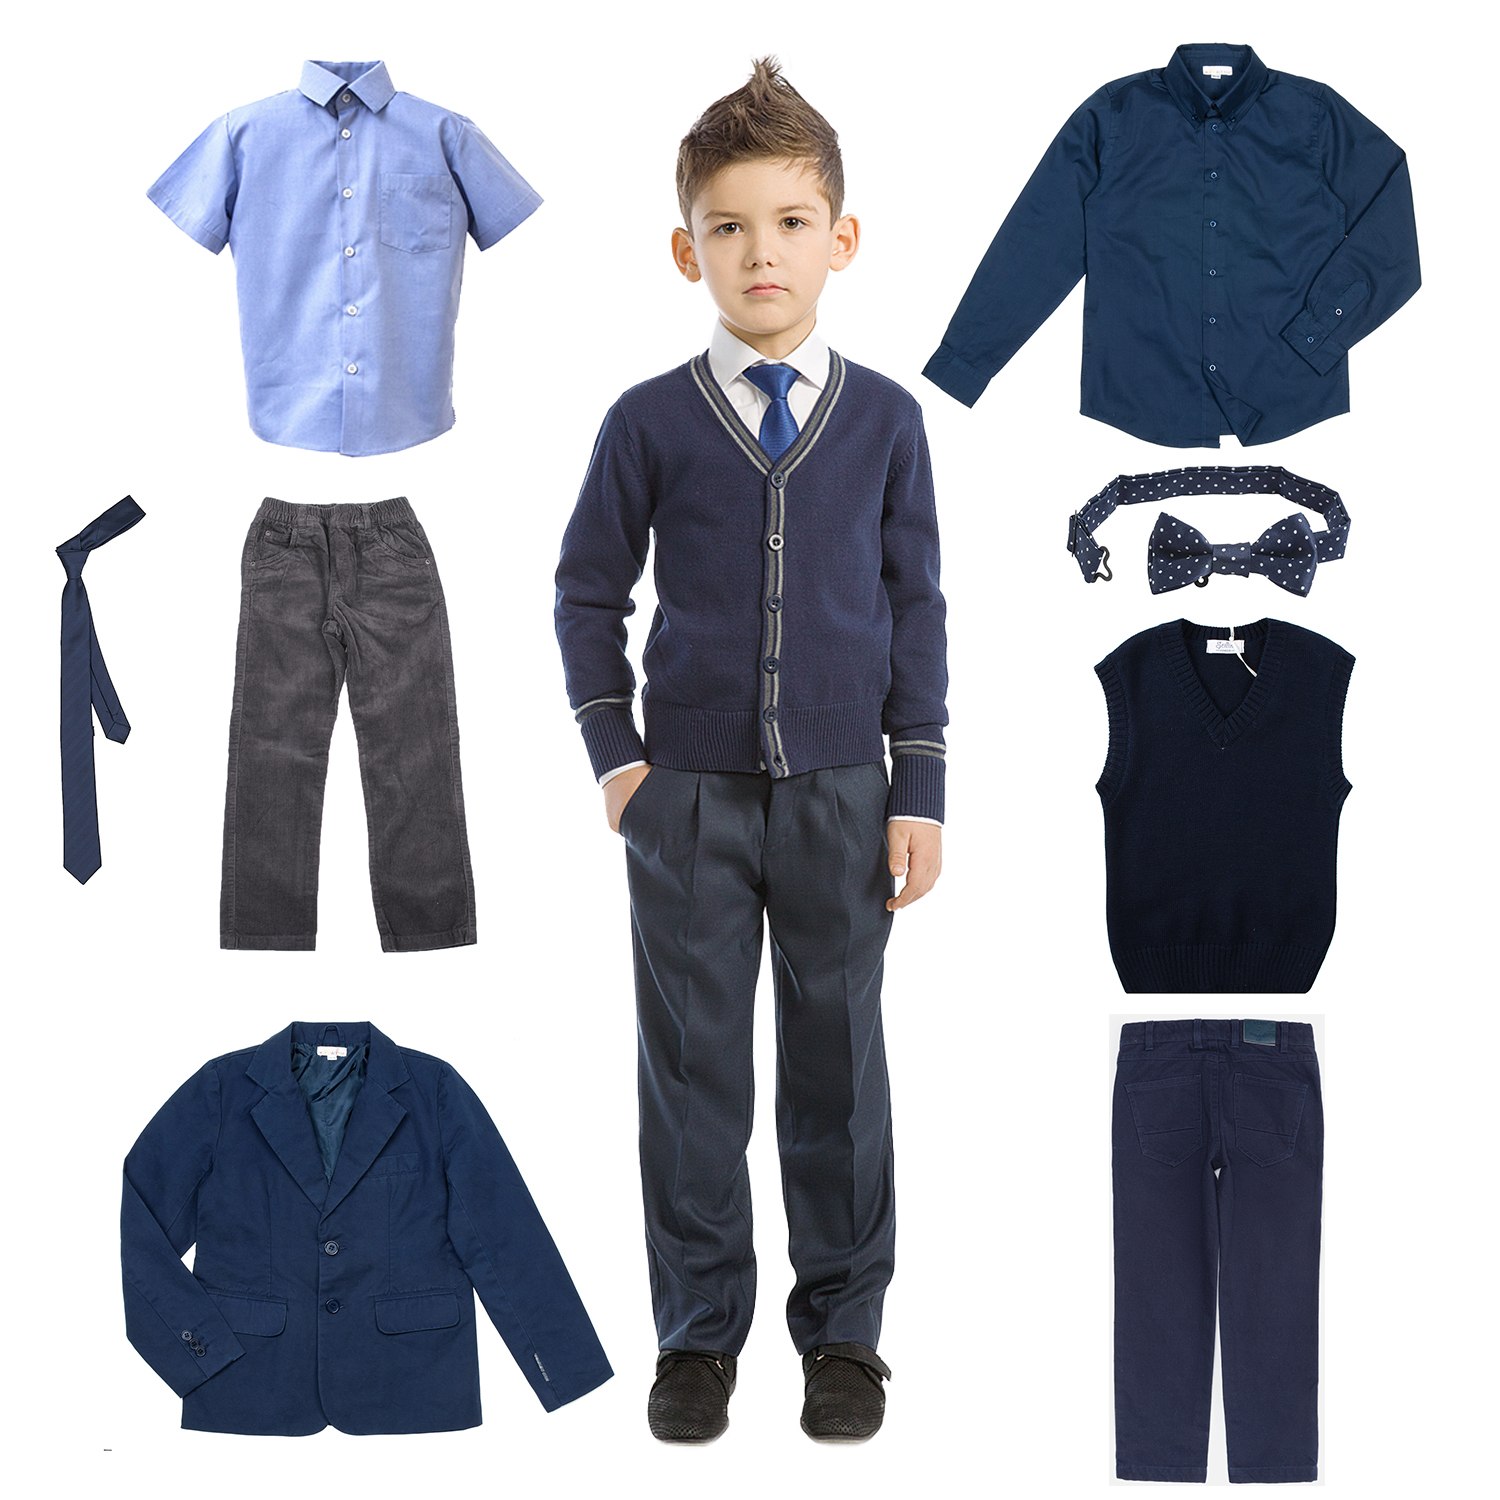 Ребенка одевать в школу. Одежда для школы для мальчиков. Одежда для школьников мальчиков. Комплект школьной формы для мальчиков. Одежда школьника мальчика.